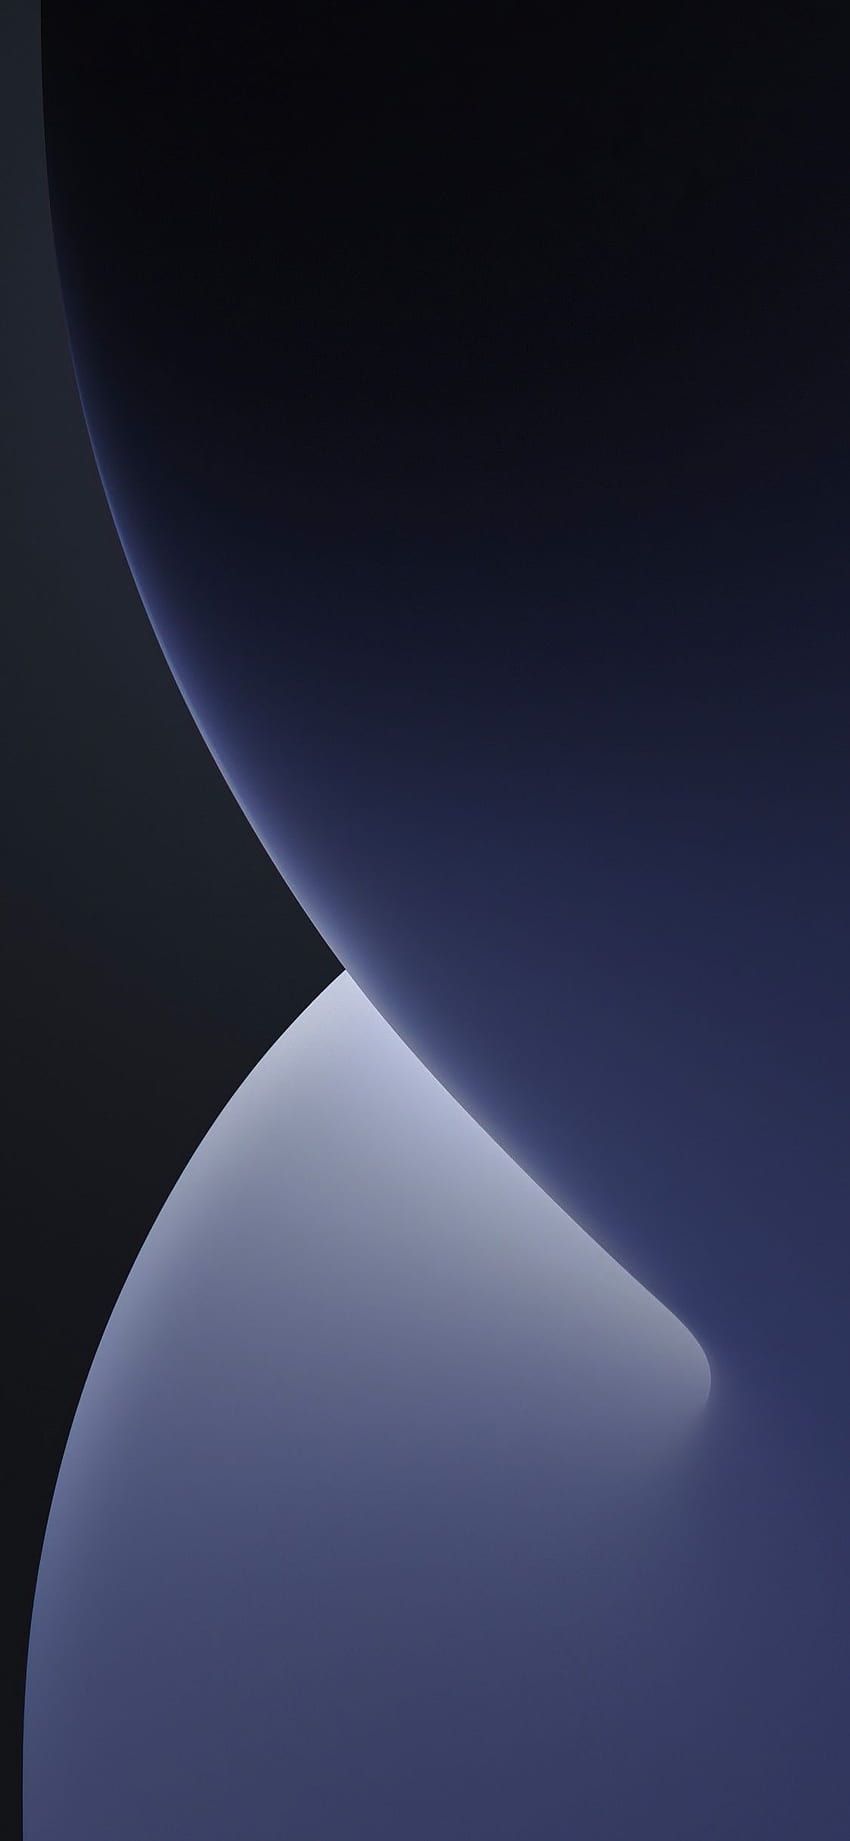 iOS 14, WWDC, 2020, iPhone 12, iPadOS, Escuro, Cinza, Estoque, Preto/Escuro, iphone gradiente escuro Papel de parede de celular HD